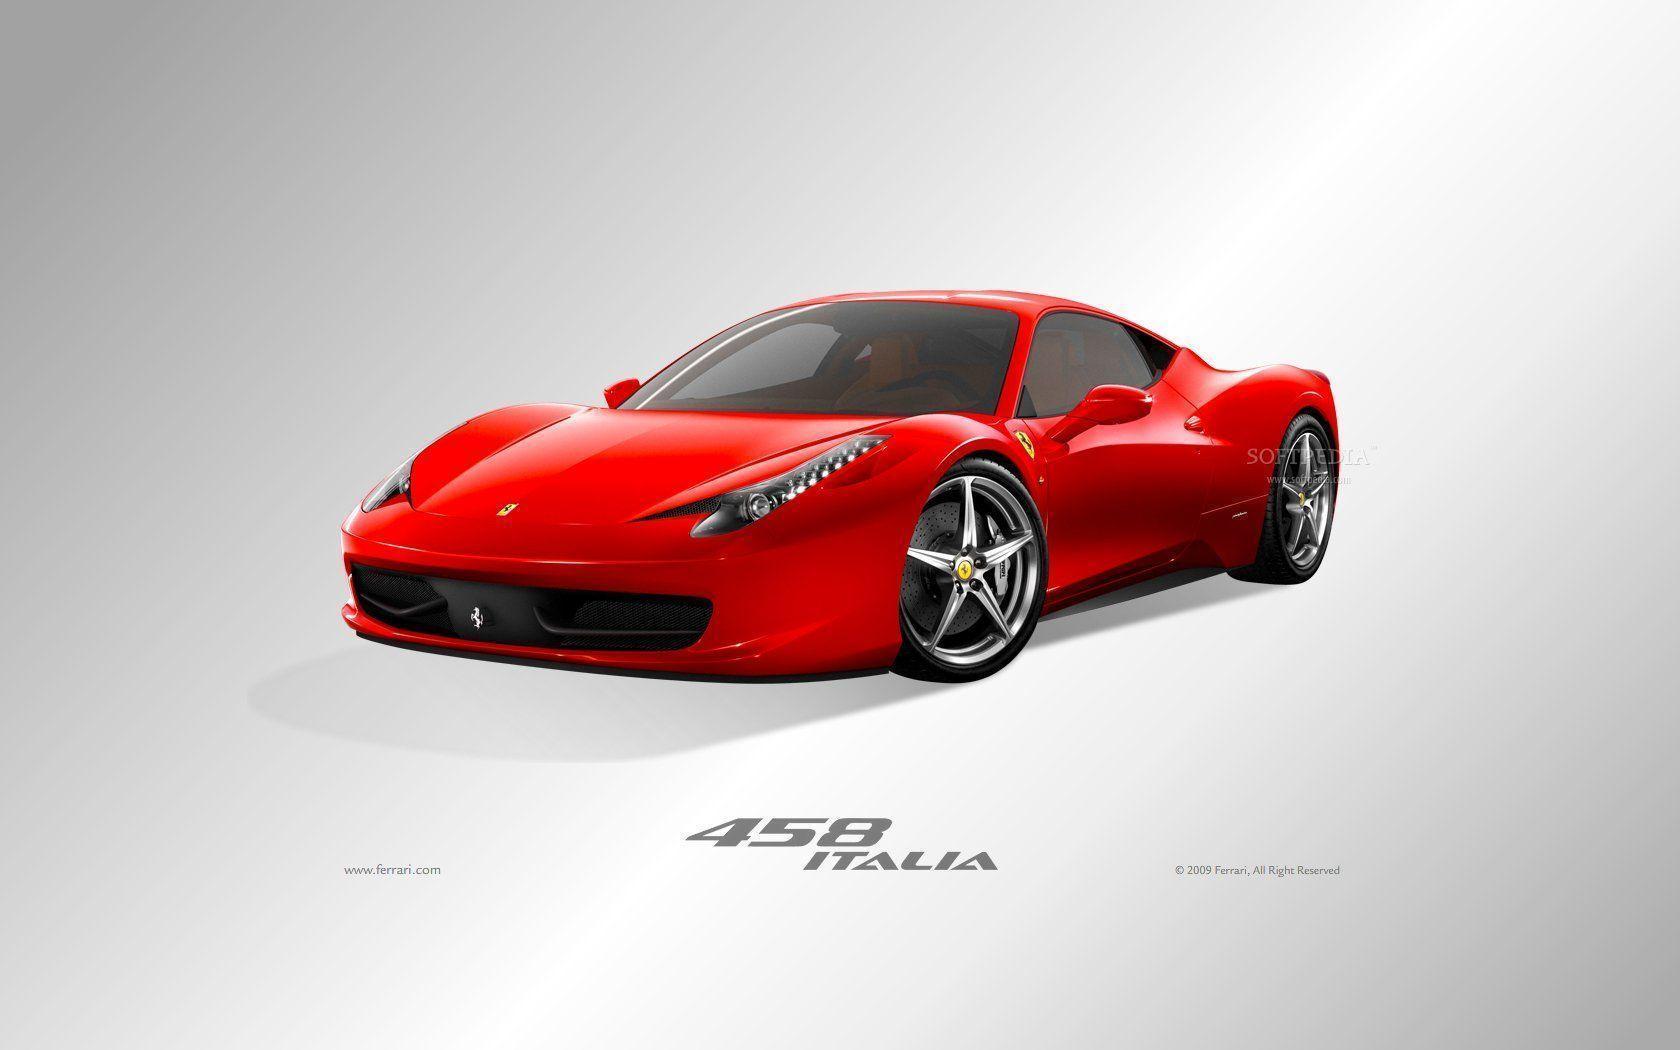 Ferrari 458 Italia Wallpaper For Widescreen Monitor